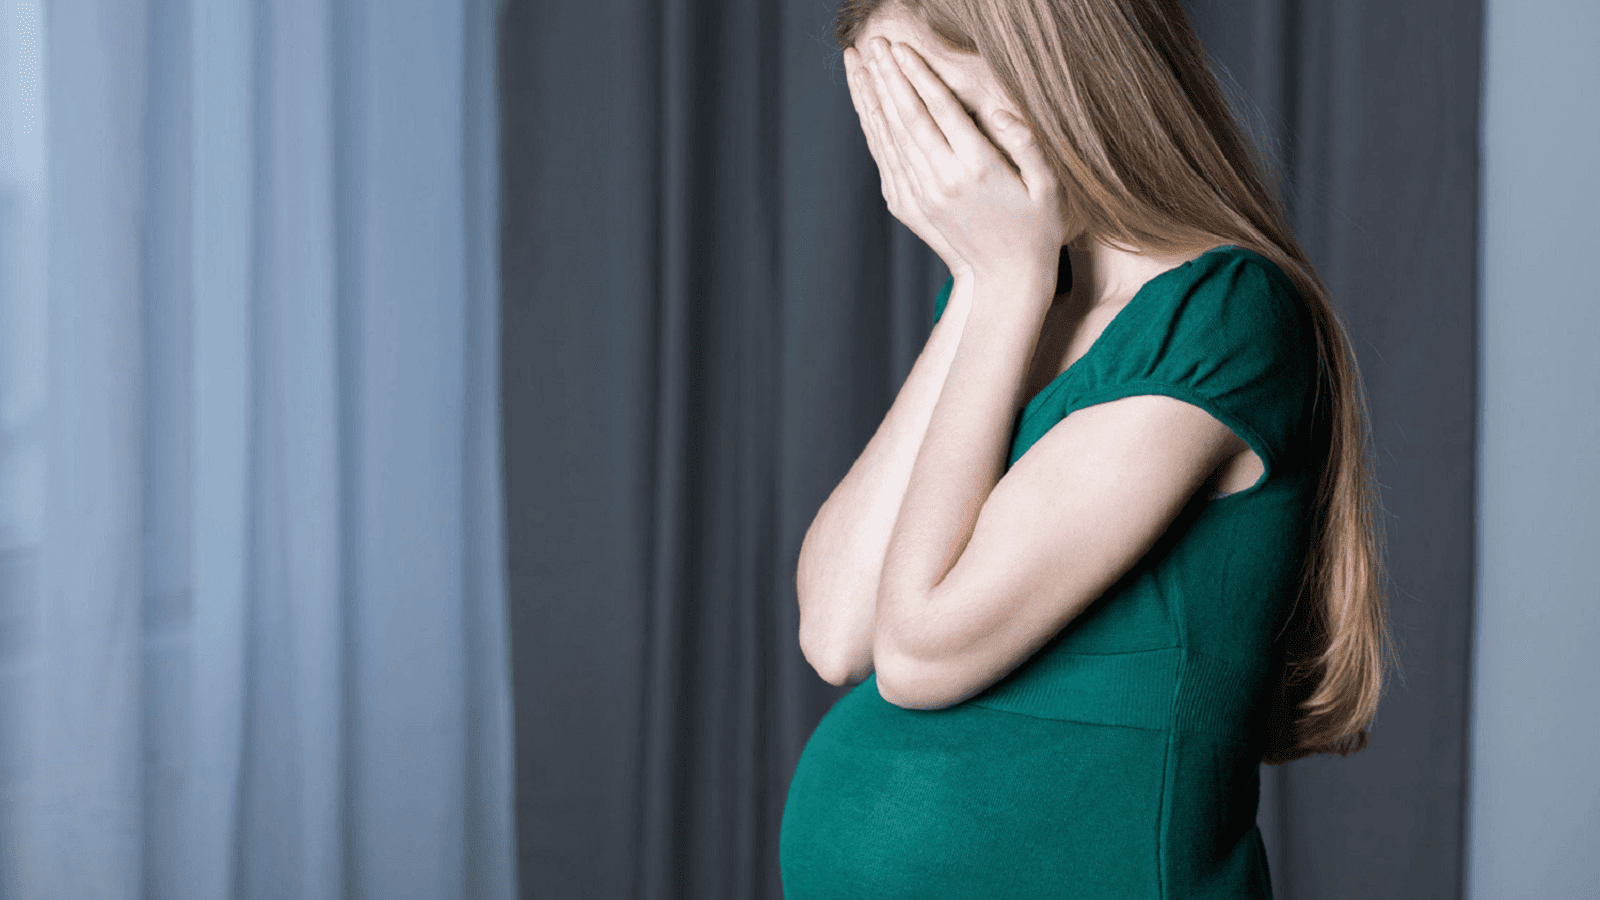 Τοκοφοβία – Ο φόβος της γυναίκας για την γέννα – Πως μπορεί να ξεπεραστεί